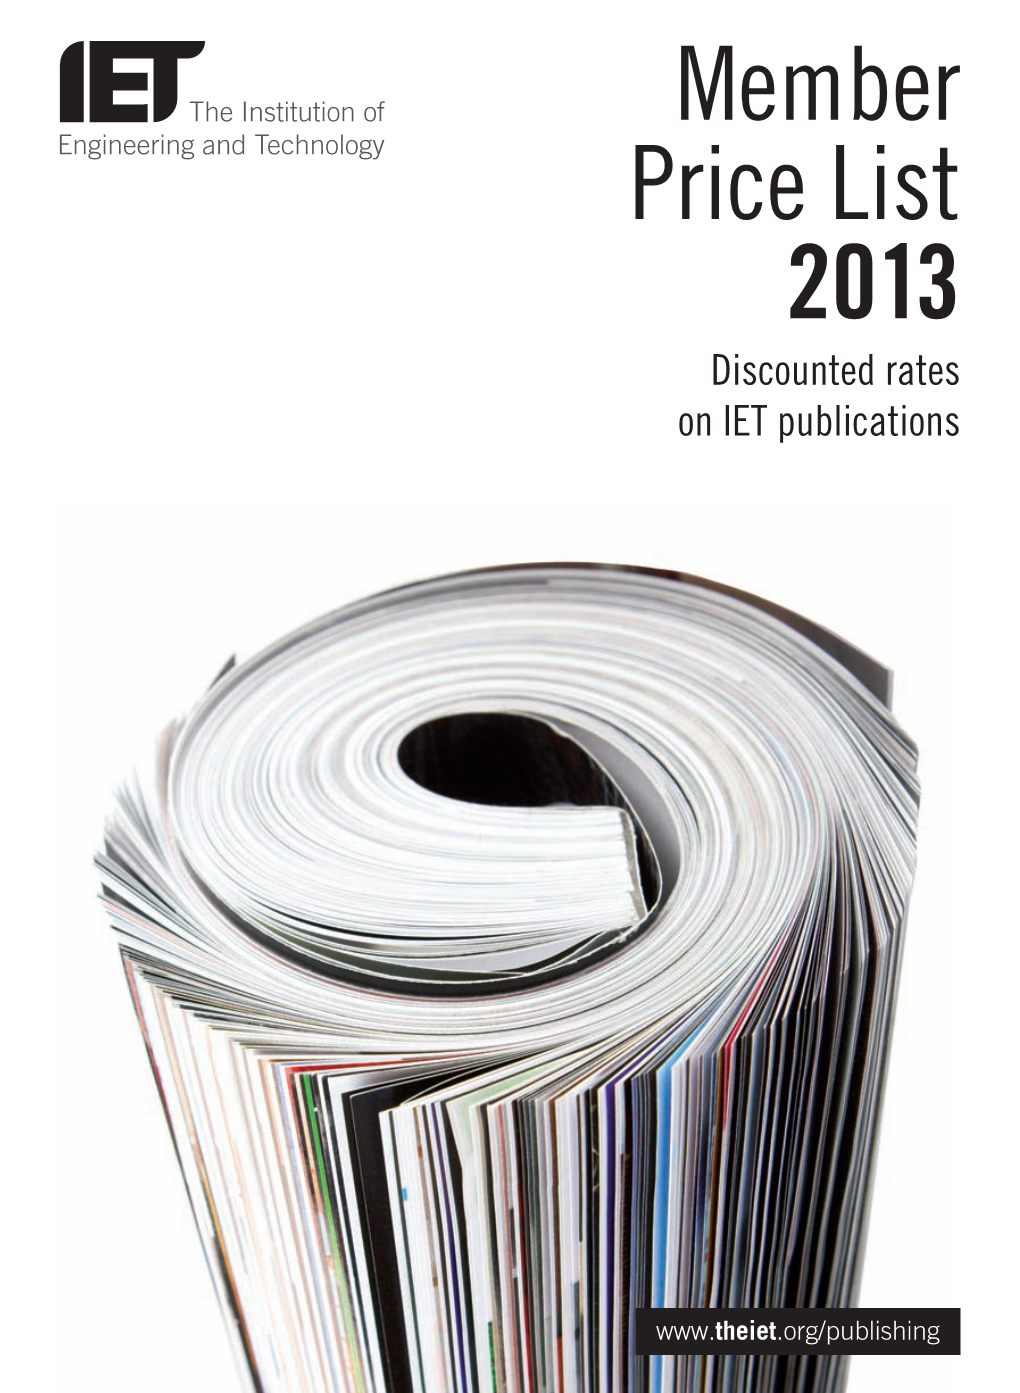 IET MEM Price List 2013.Indd 2 23/10/2012 16:25 IET Journals